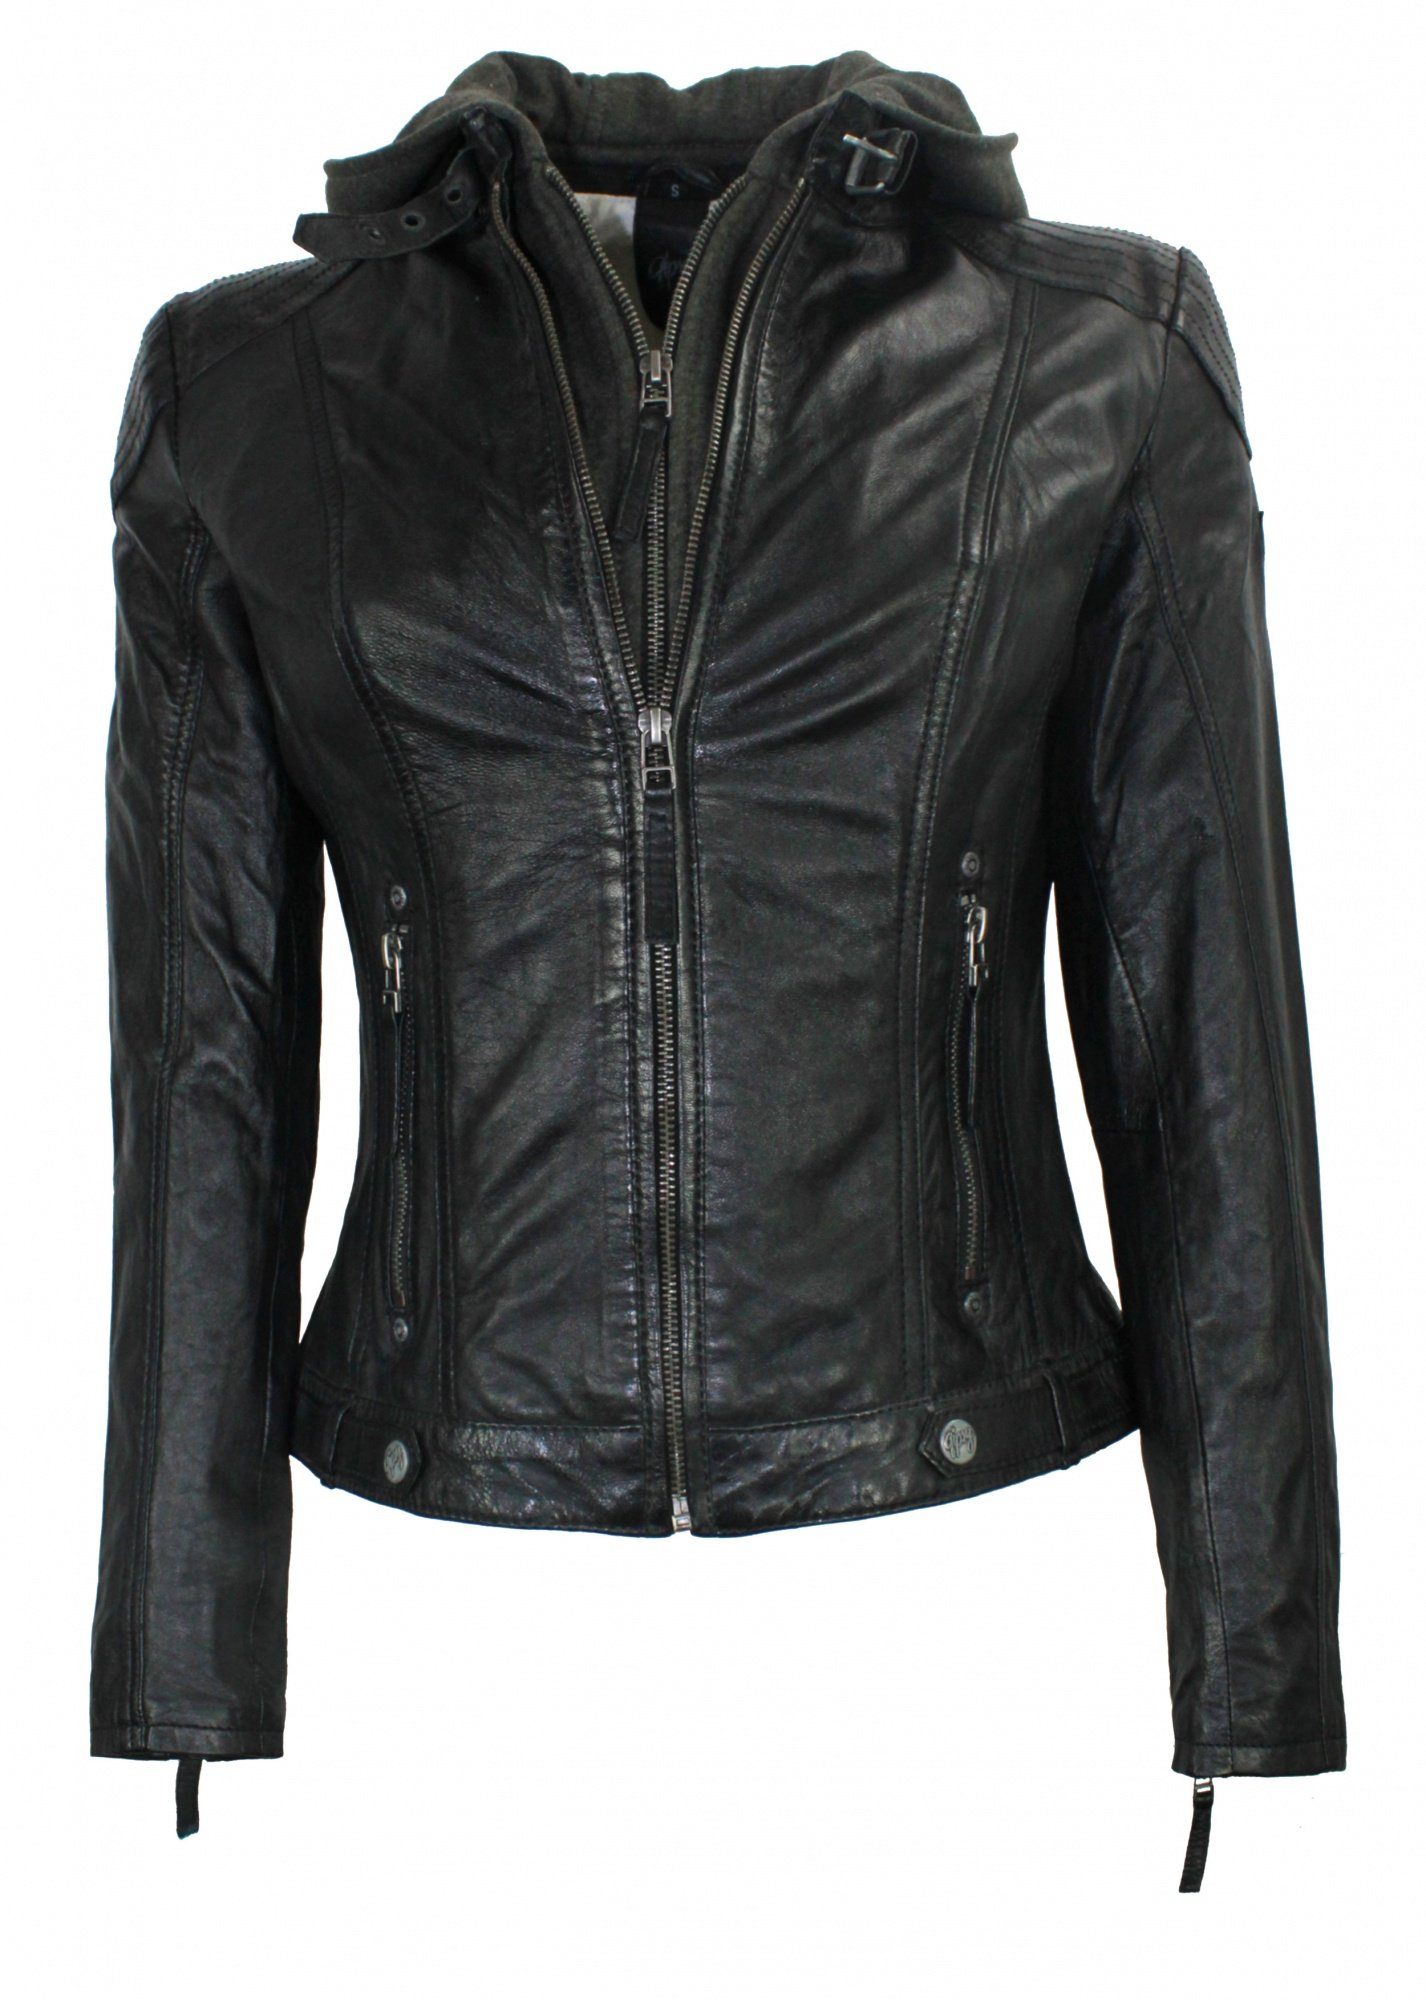 Damen Lederjacke in schwarz online kaufen | OTTO